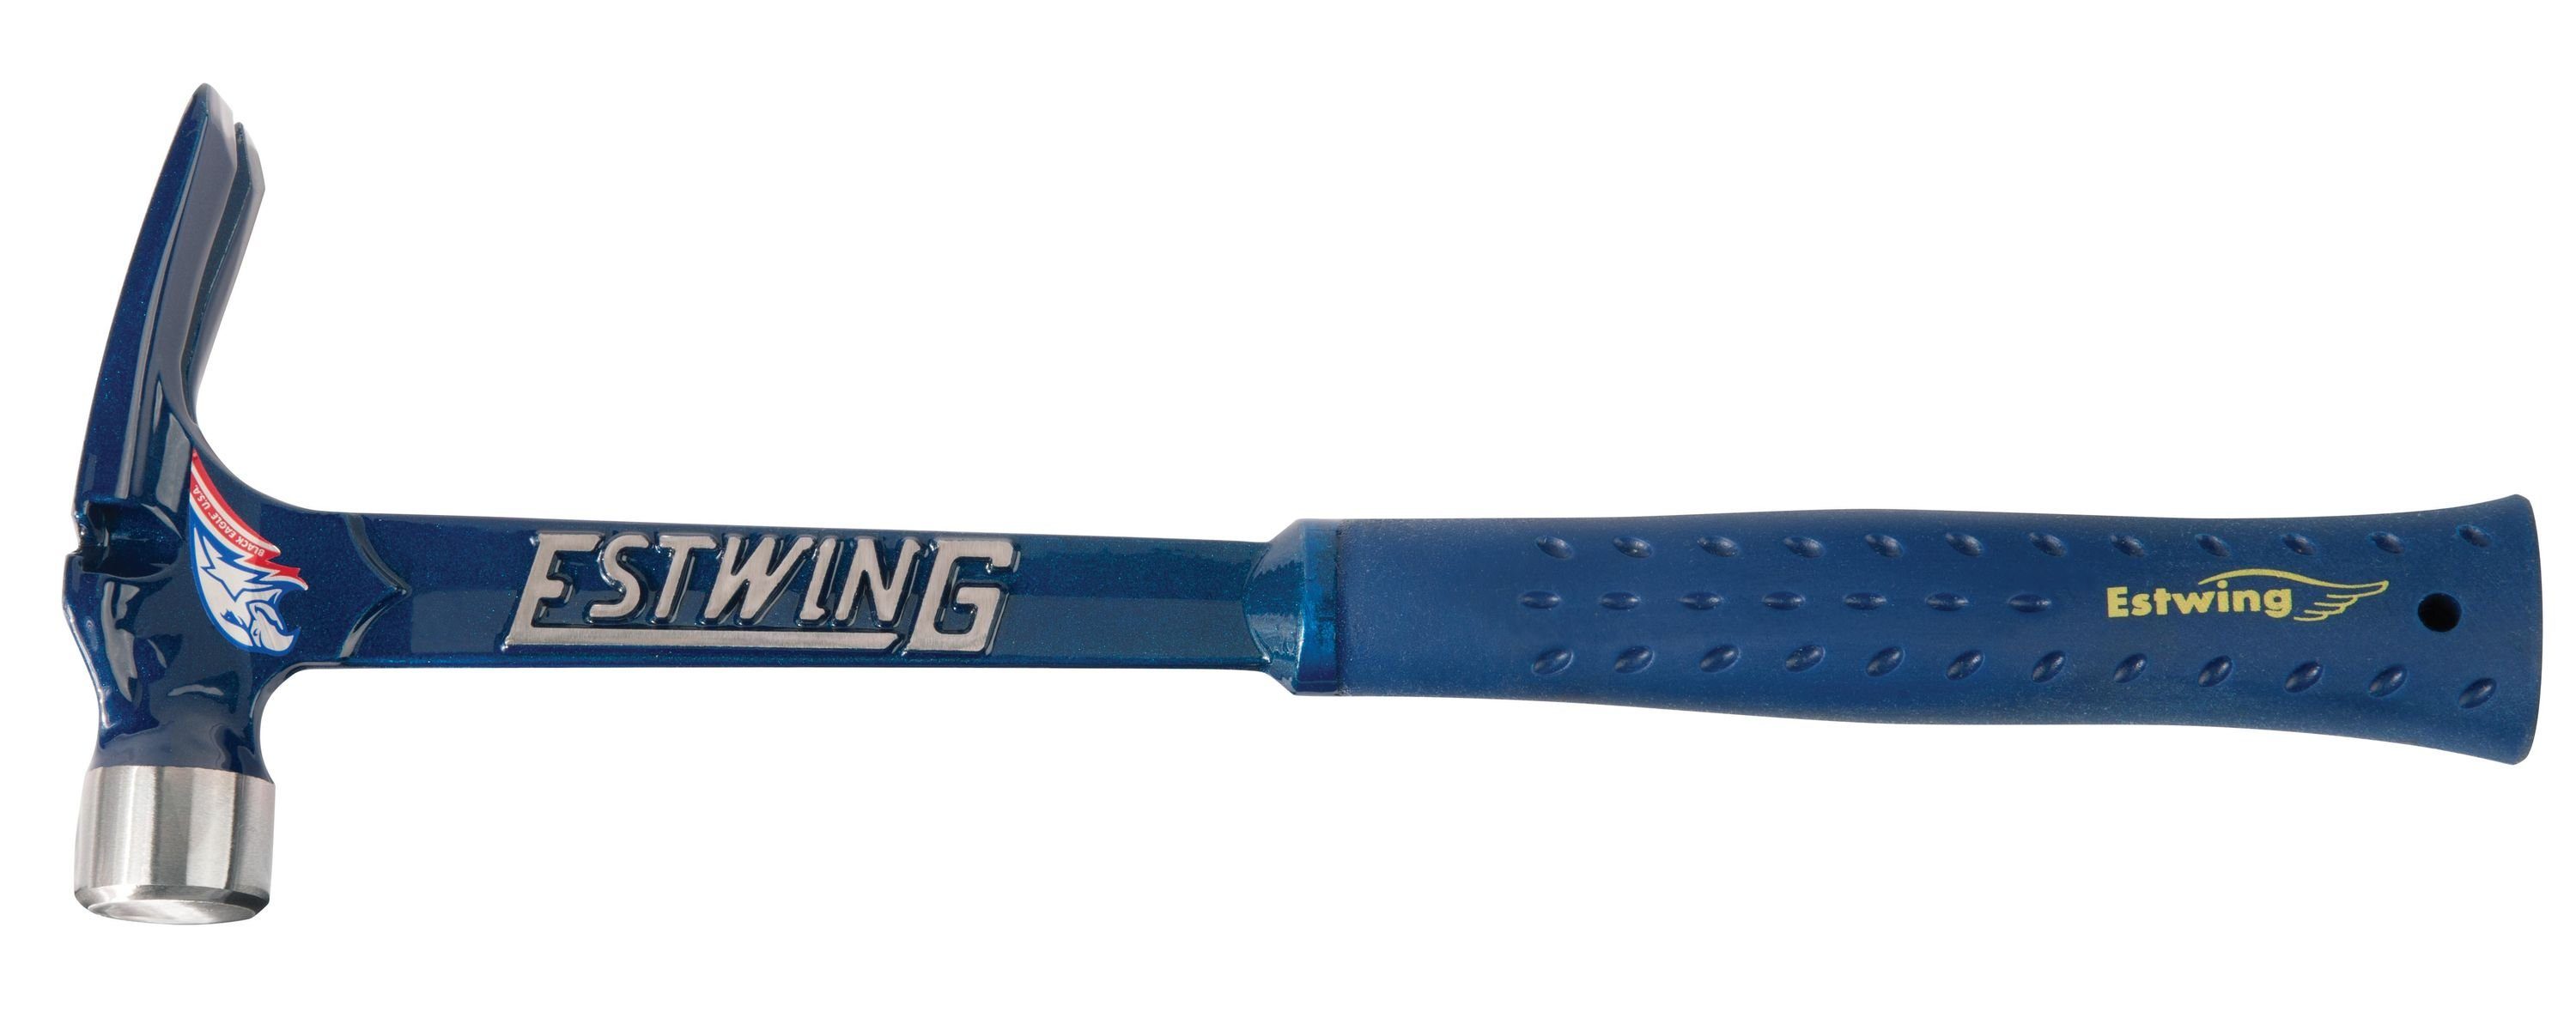 Kopfg. Blau, Estwing mit E6/19S Bahn Vinyl-Griff, 530gramm, glatte Estwing Klauenhammer Hammer